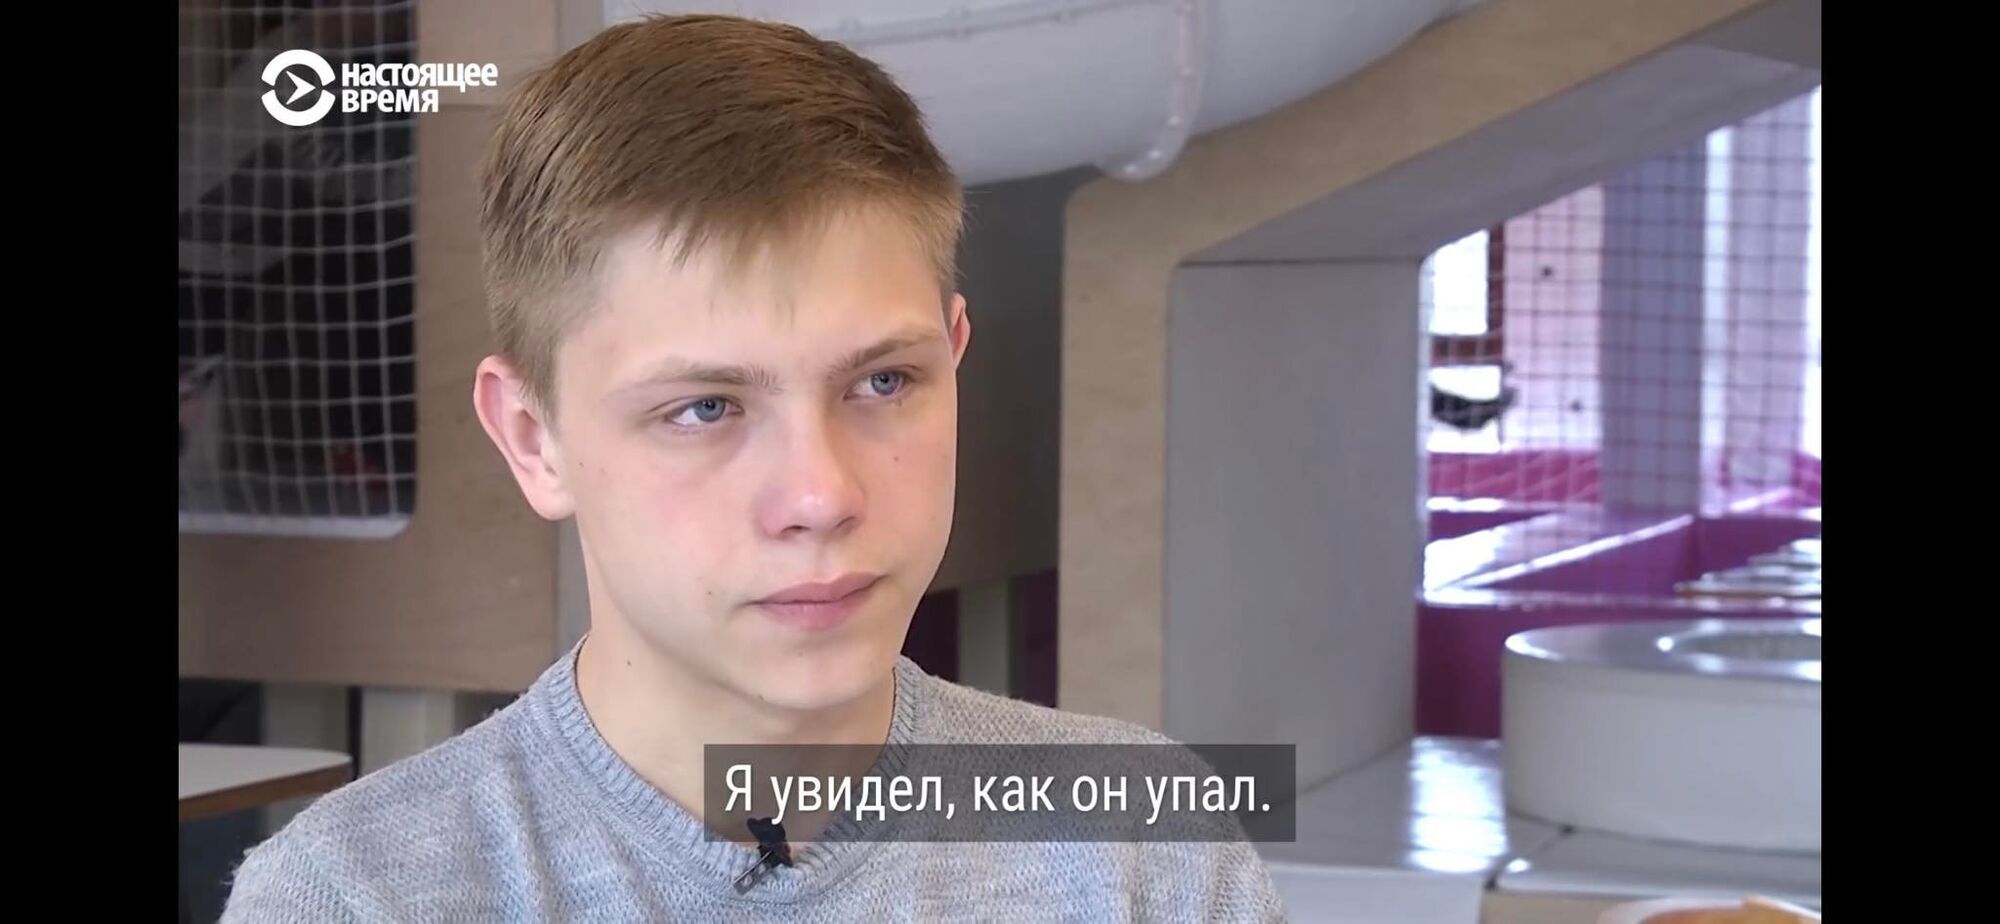 Вячеславу всего 18 лет